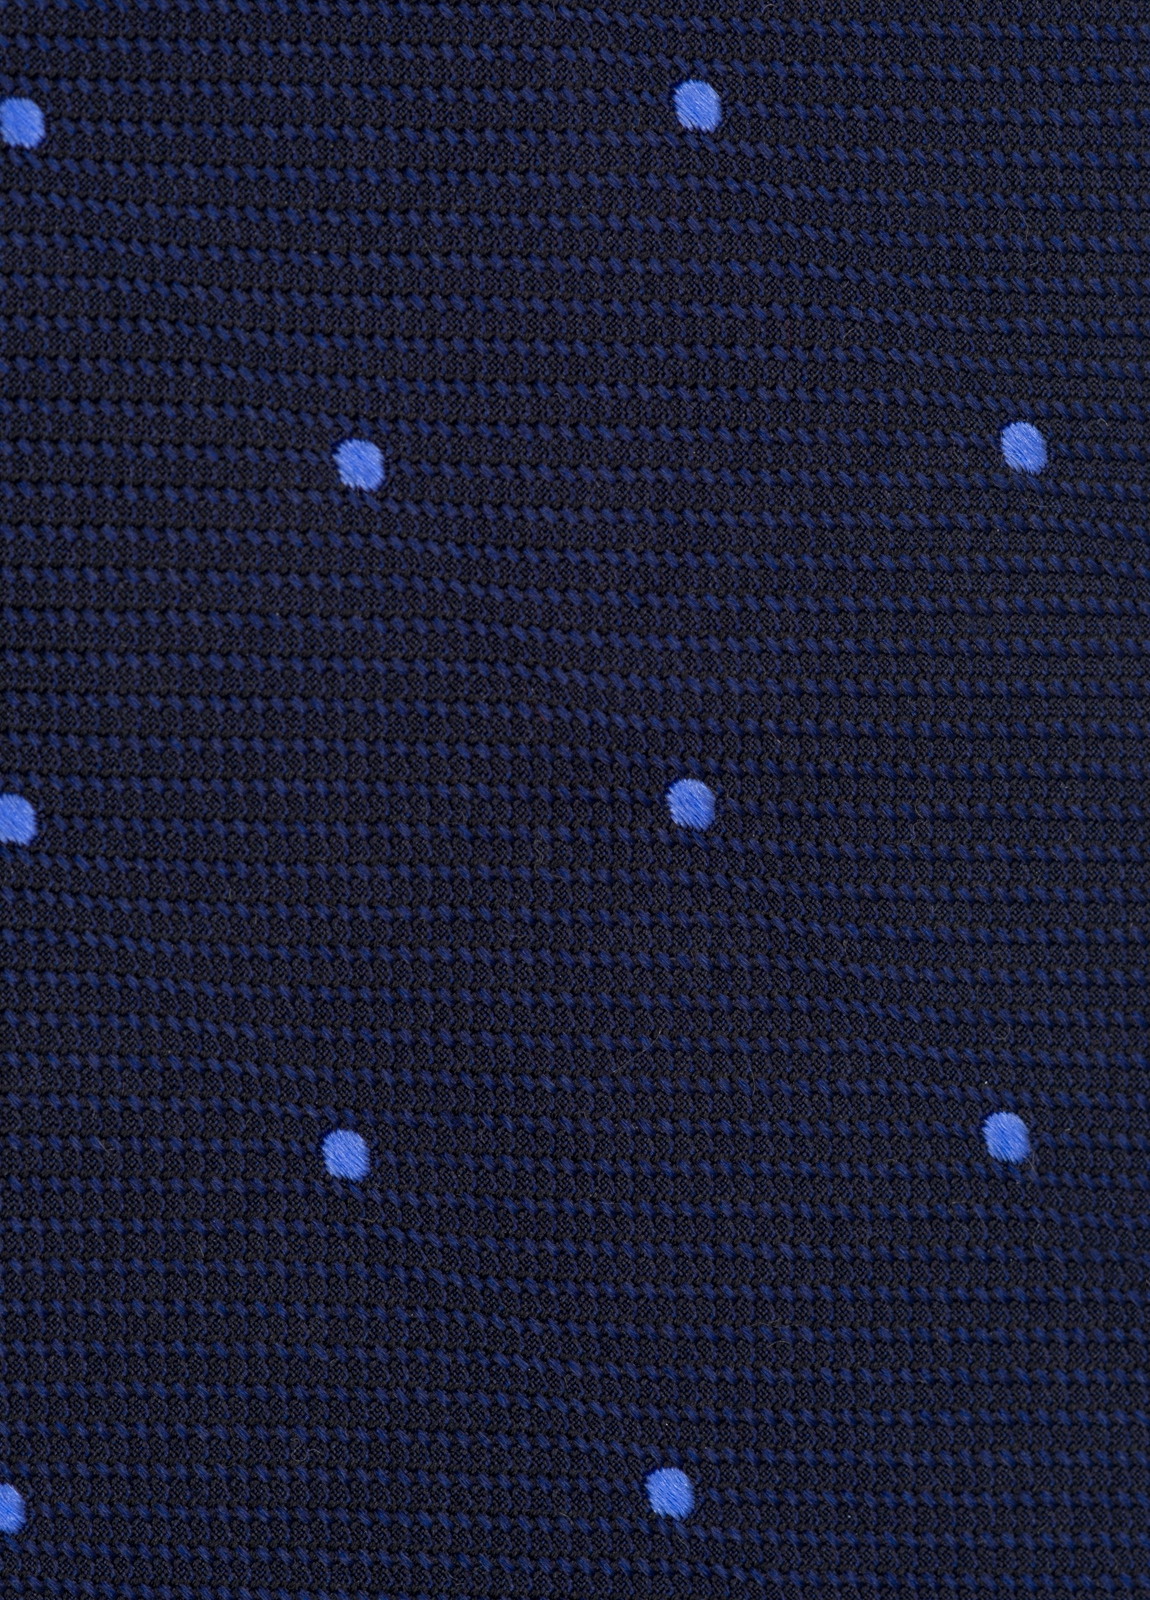 Corbata FUREST COLECCIÓN color marino con topito azul. - Ítem2